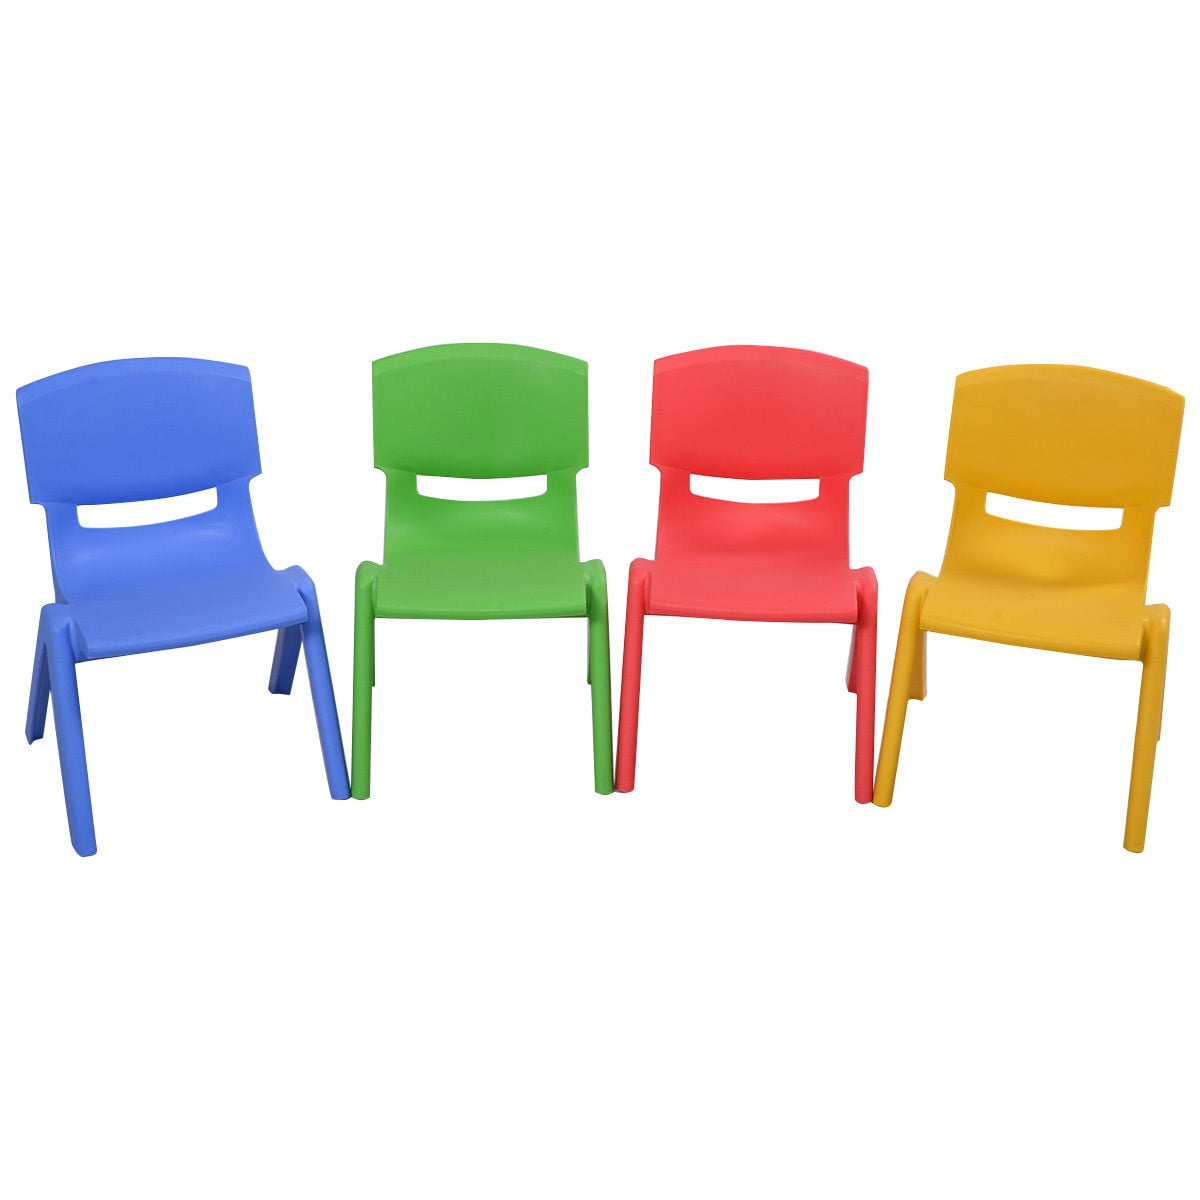 COSTWAY 4 Chaises pour Enfants, Fabriquer en Plastique Multicolore